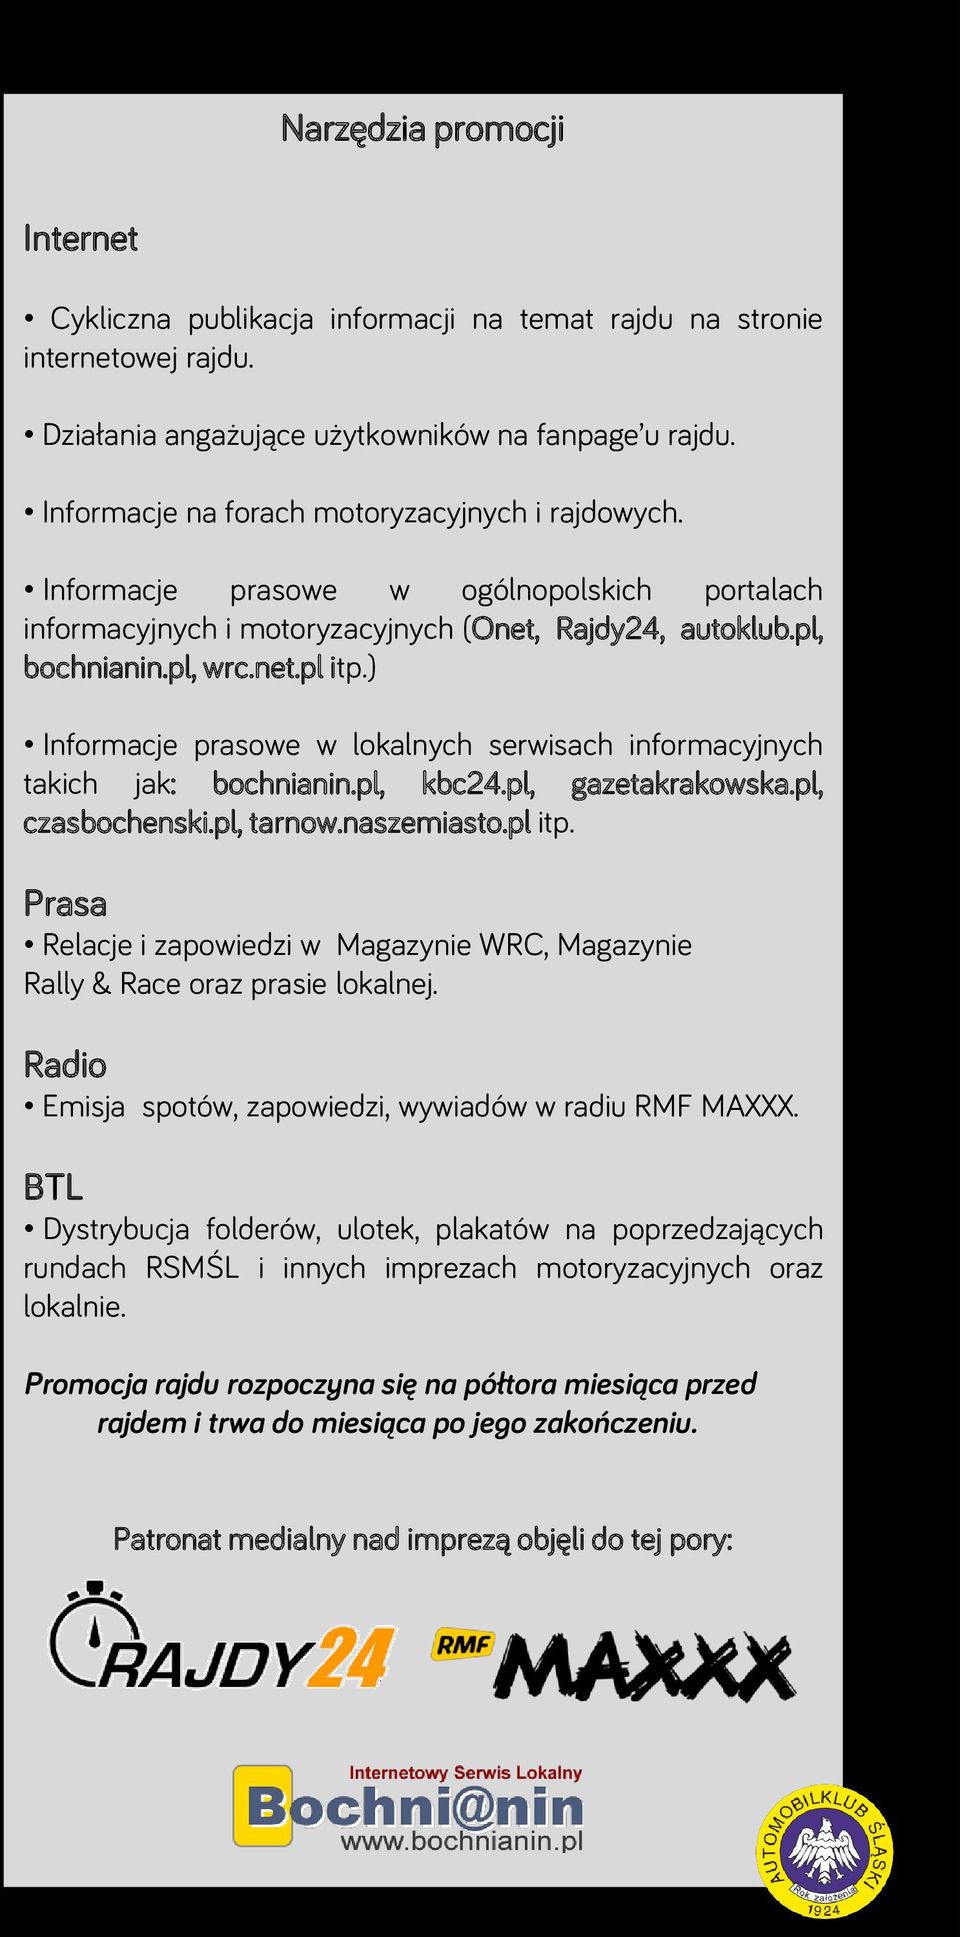 ) Informacje prasowe w lokalnych serwisach informacyjnych takich jak: bochnianin.pl, kbc24.pl, gazetakrakowska.pl, czasbochenski.pl, tarnow.naszemiasto.pl itp.